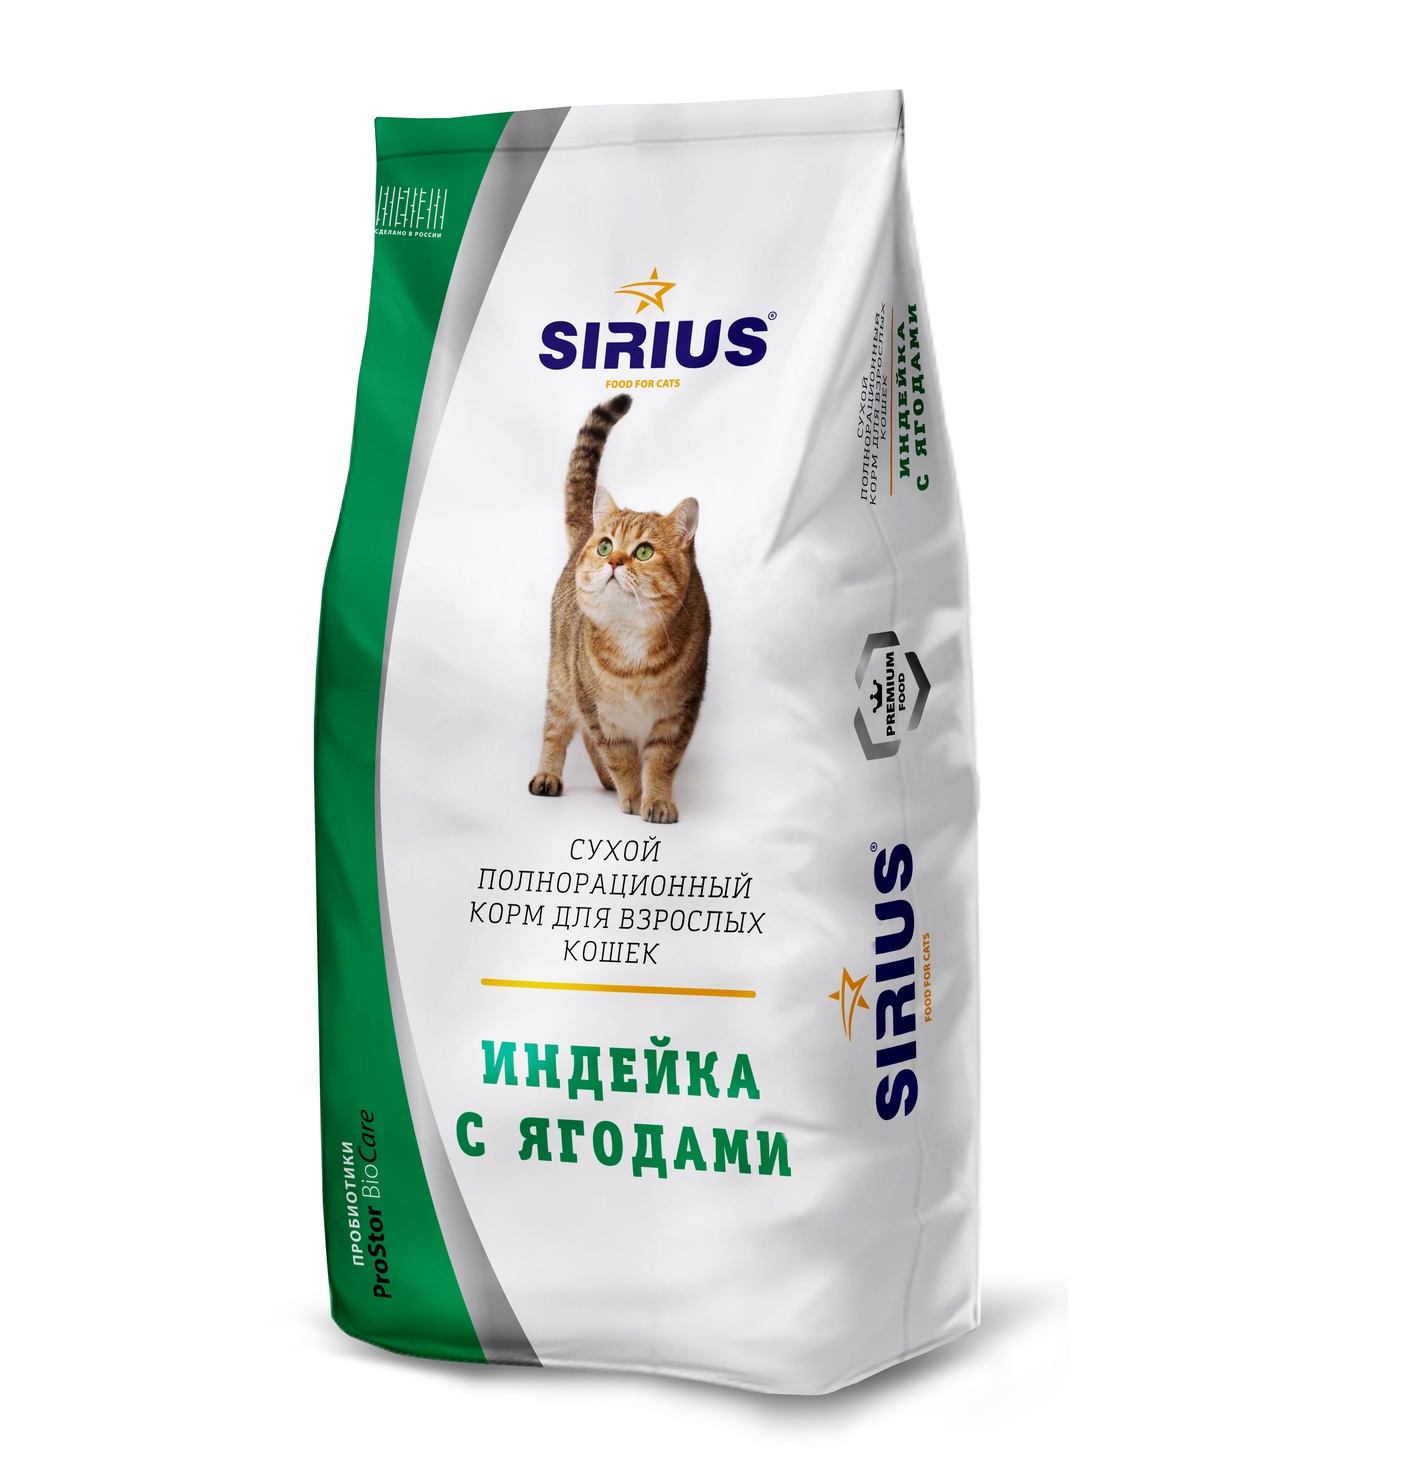 Сириус для кошек 10 кг купить. Сириус корм для кошек 10 кг. Корм Сириус для котят с индейкой. Линейка кормов Сириус для кошек. Корм для кошек сухой премиум Сириус.